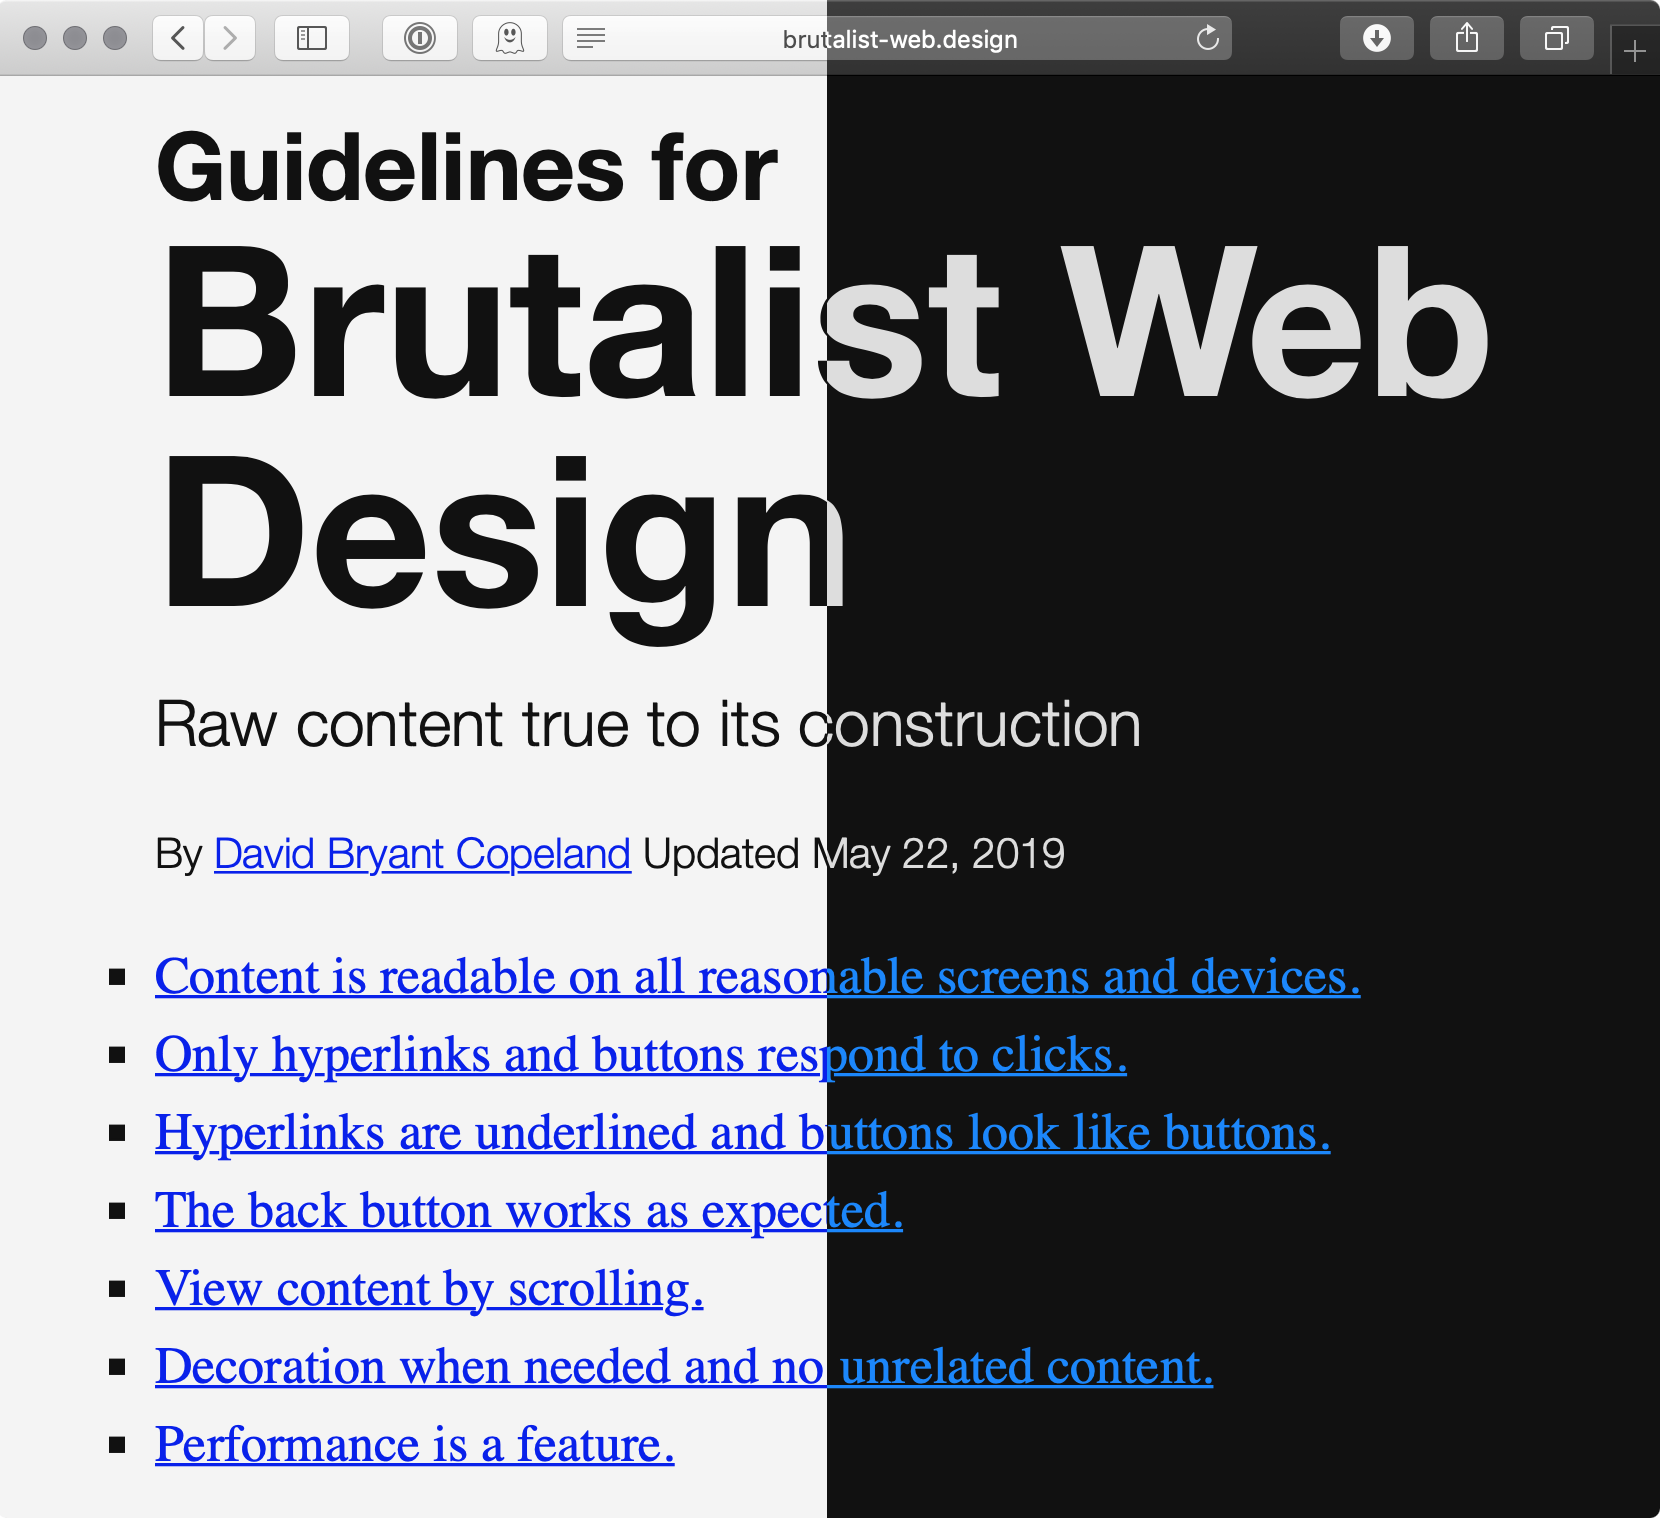 Rendering of brutalist-web.design's website in dark mode and light mode side-by-side